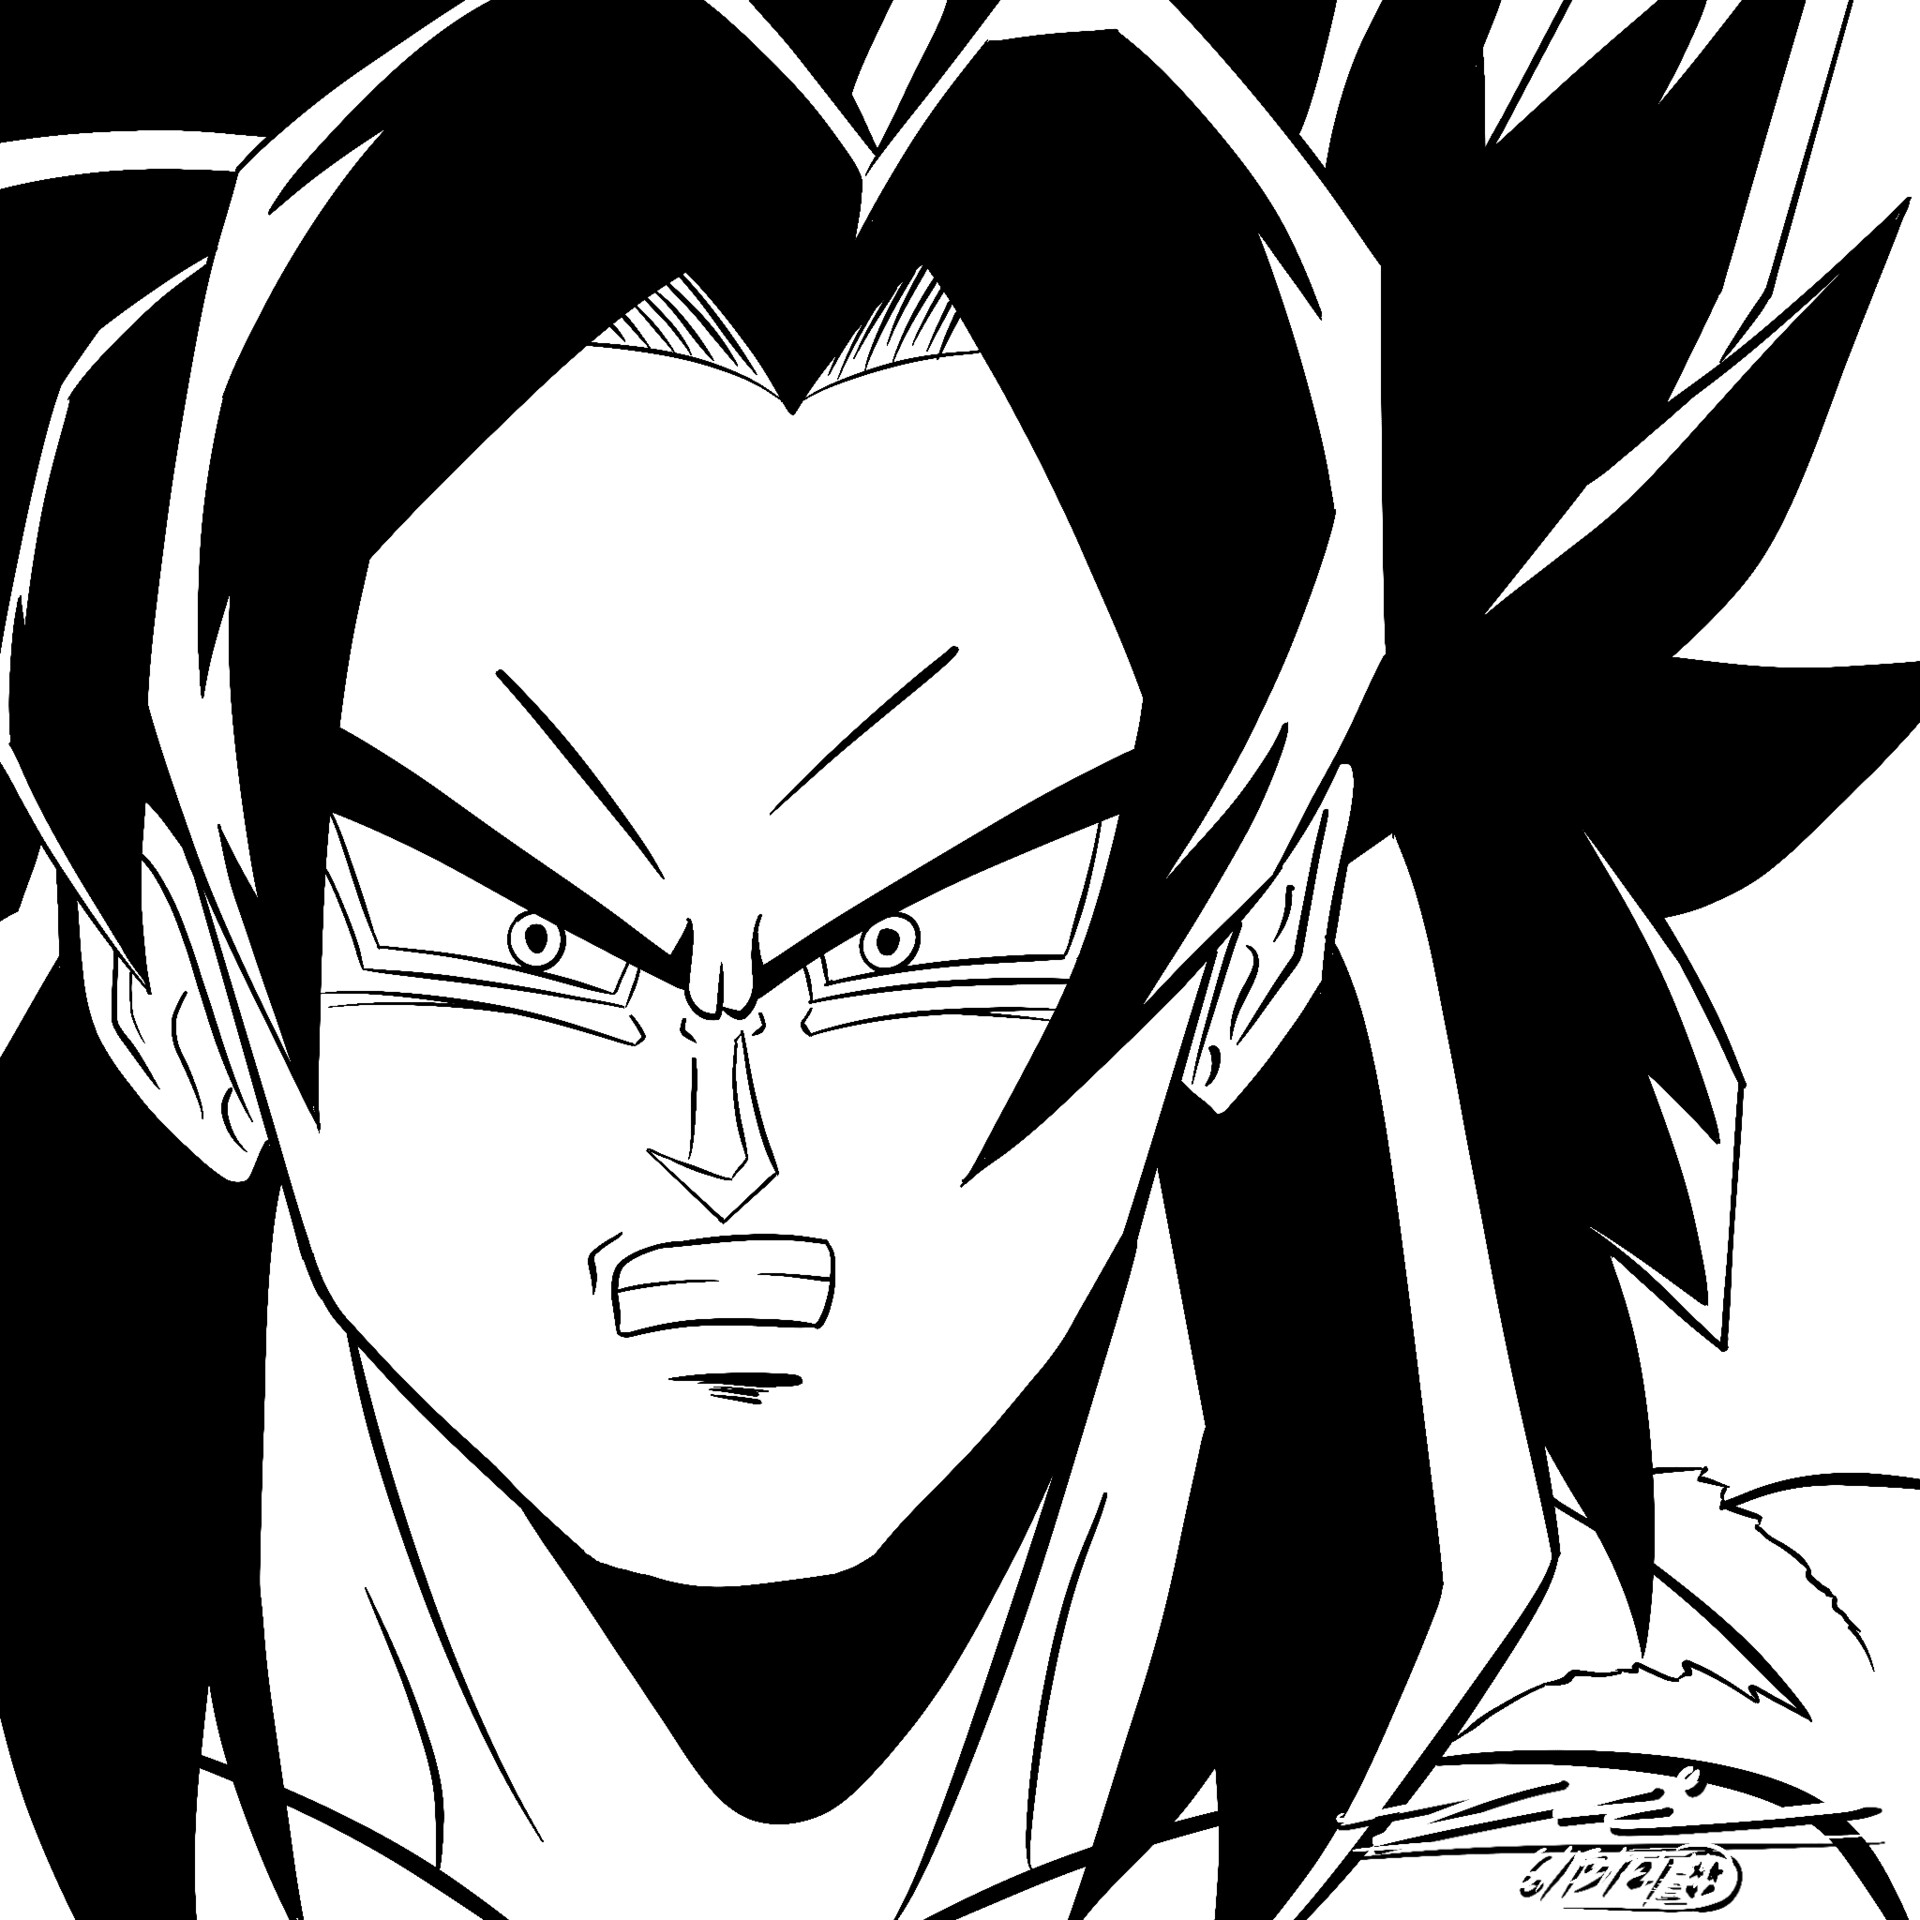 ArtStation - Super Saiyan 4 Goku - Art Study